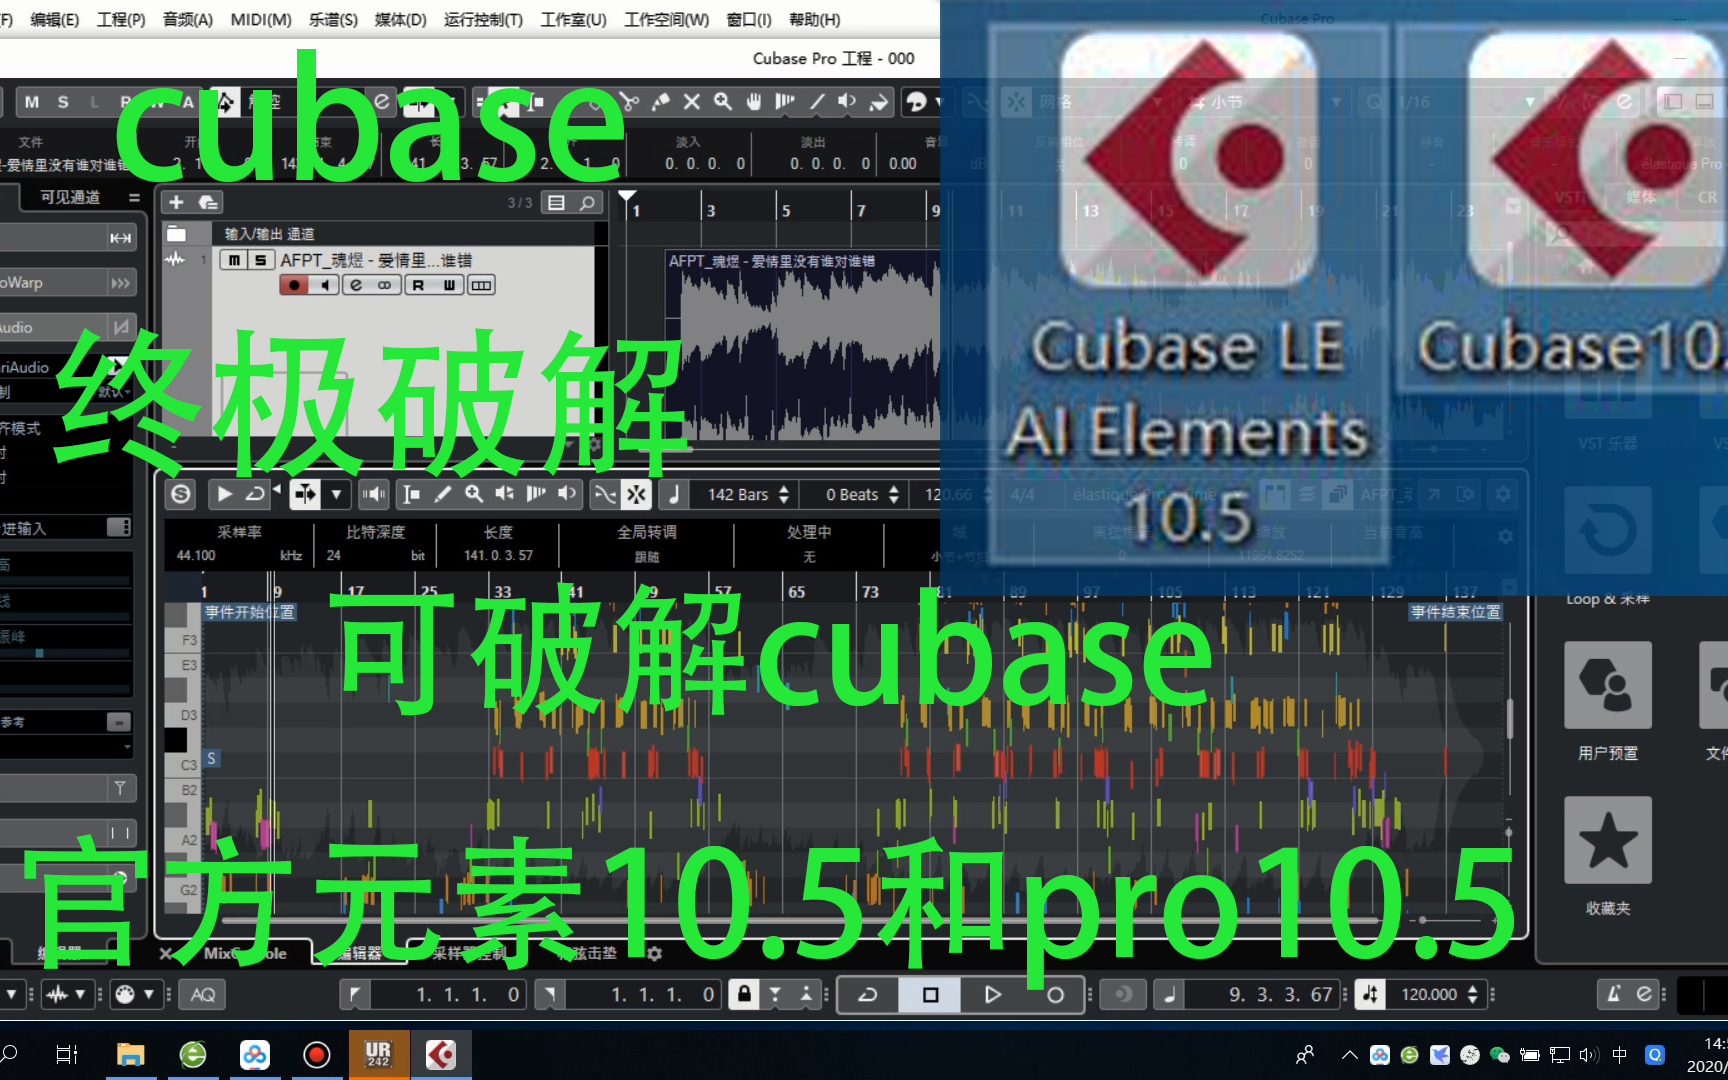 cubase 终极破解安装教程，适用于cubase元素10.5和pro 10.5_哔哩哔哩 